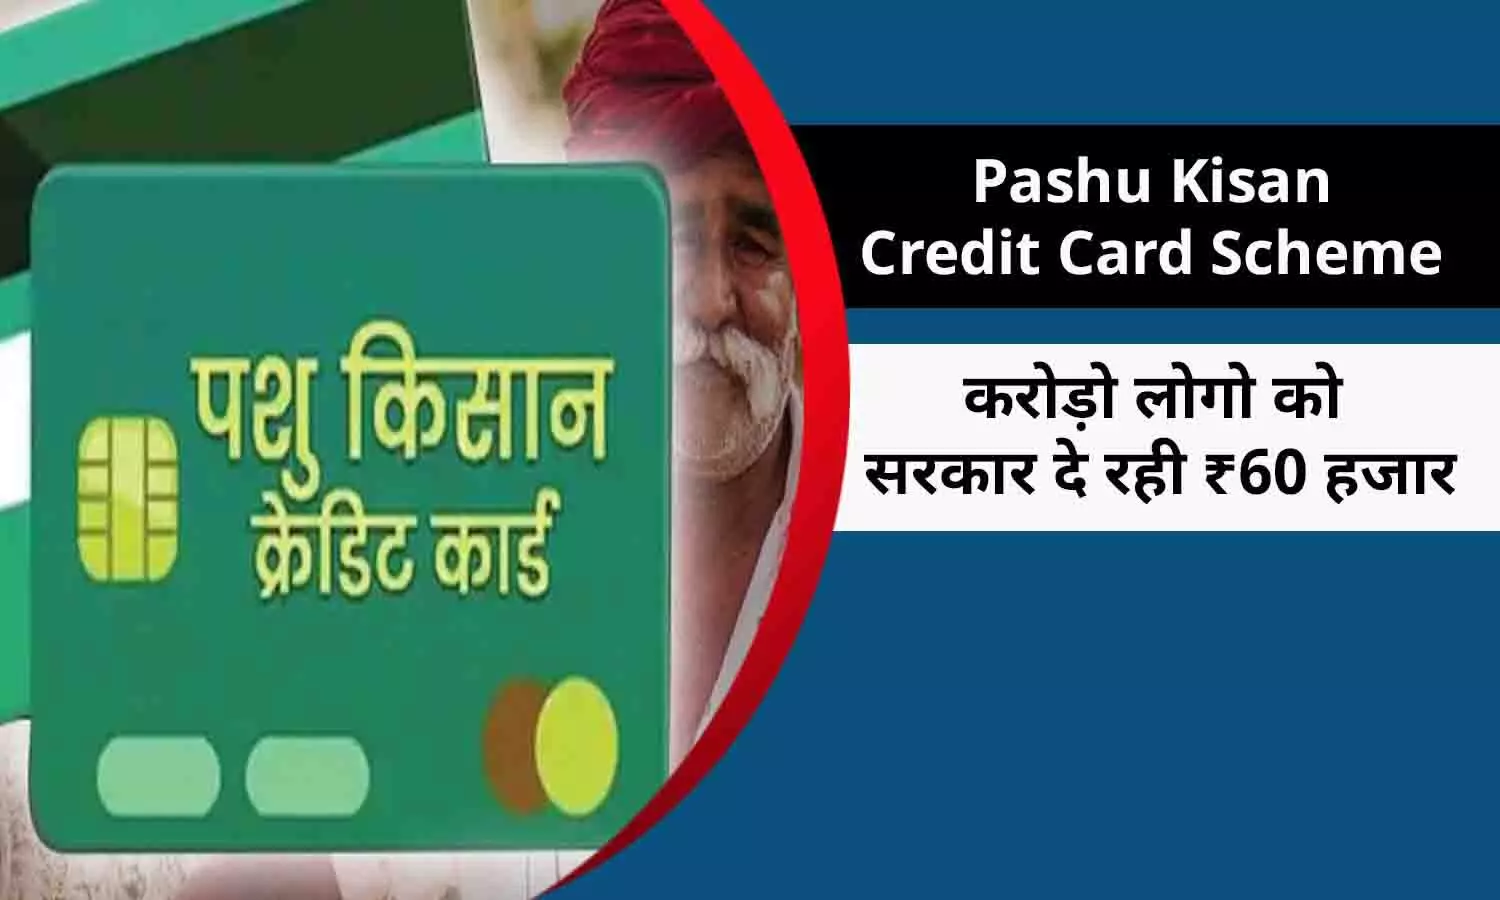 Pashu Kisan Credit Card Scheme In Hindi 2022: पशु किसान क्रेडिट कार्ड योजना को लेकर नया अपडेट, करोड़ो लोगो को सरकार दे रही ₹60 हजार, ये है प्रोसेस